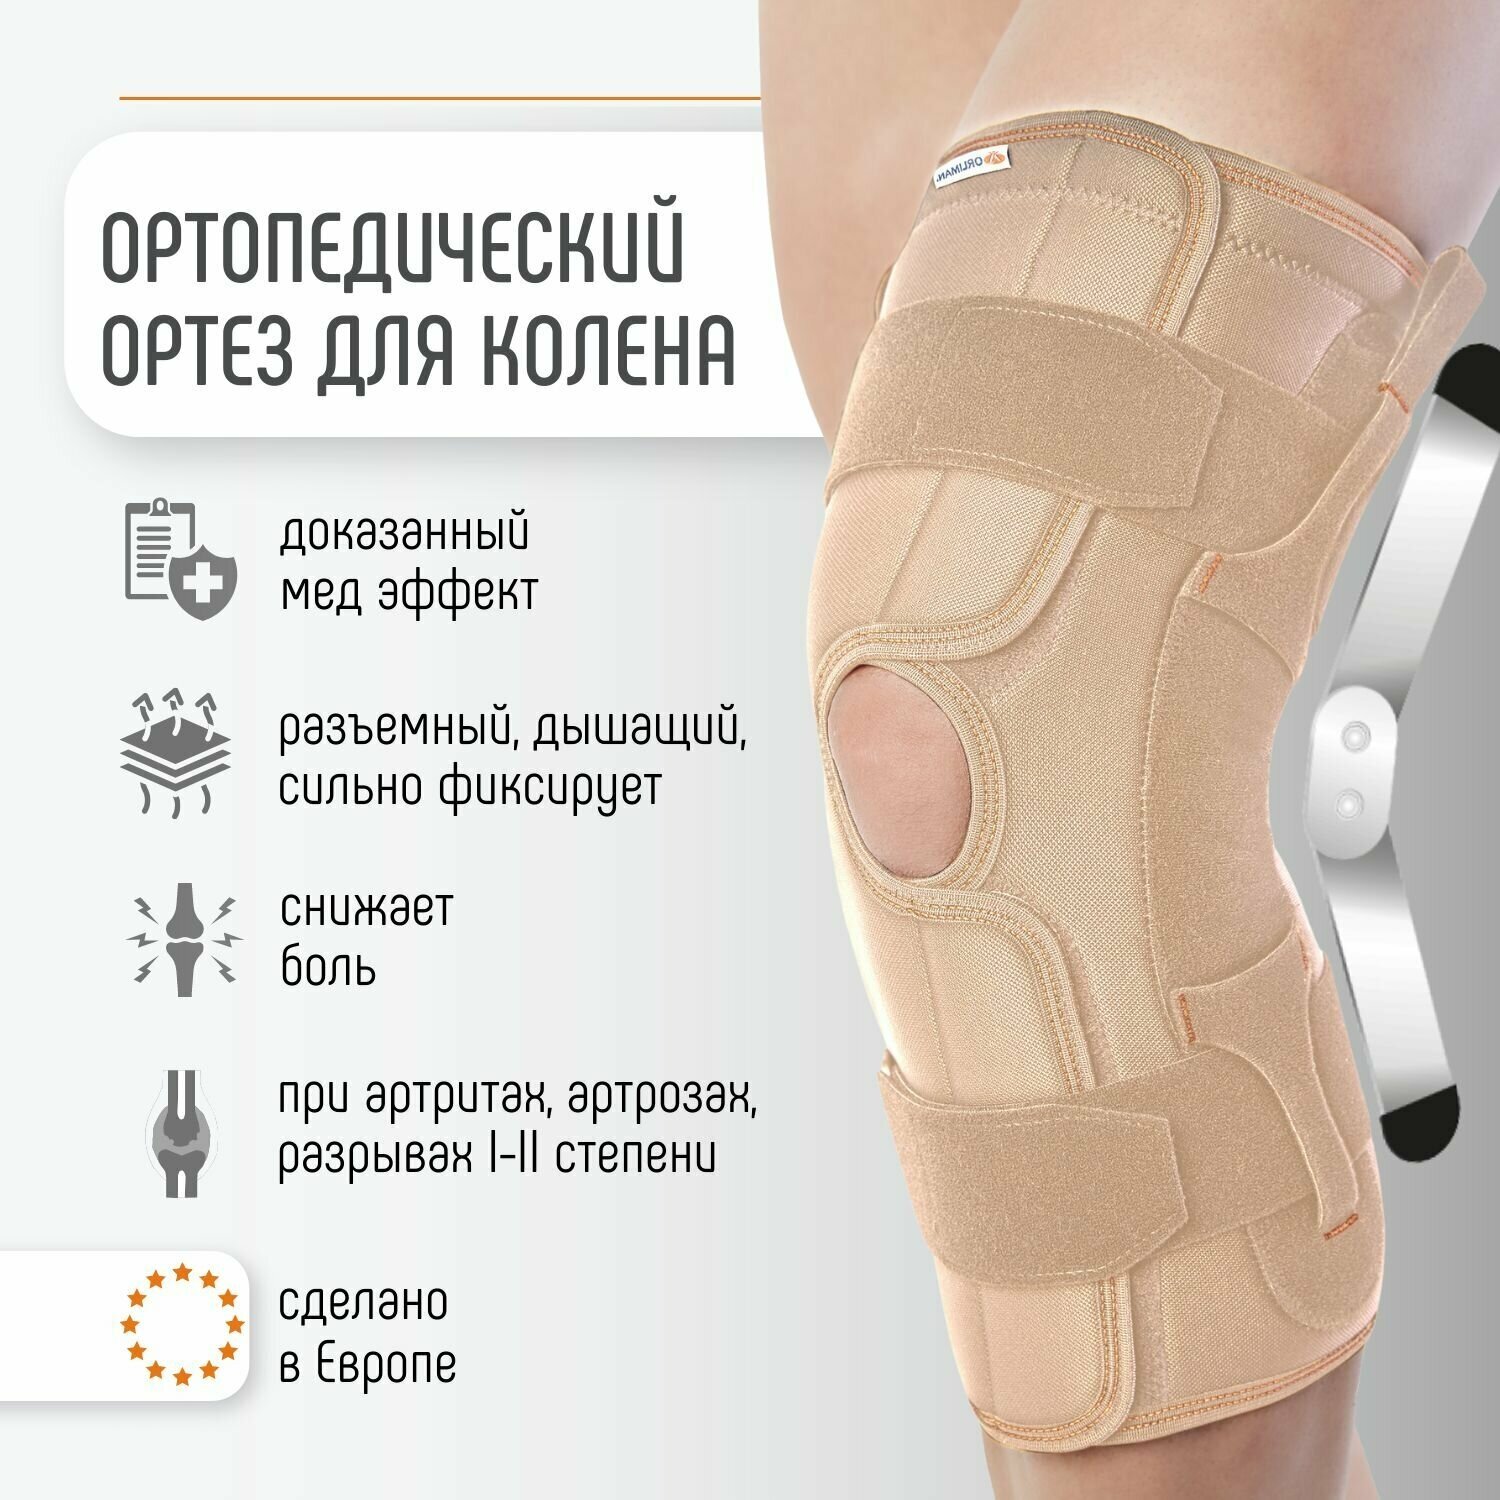 Ортез на коленный сустав ортопедический ORLIMAN, бандаж коленный с полицентрическими ребрами жесткости, наколенник послеоперационный, фиксатор колена Испания 6104-A 7104-A